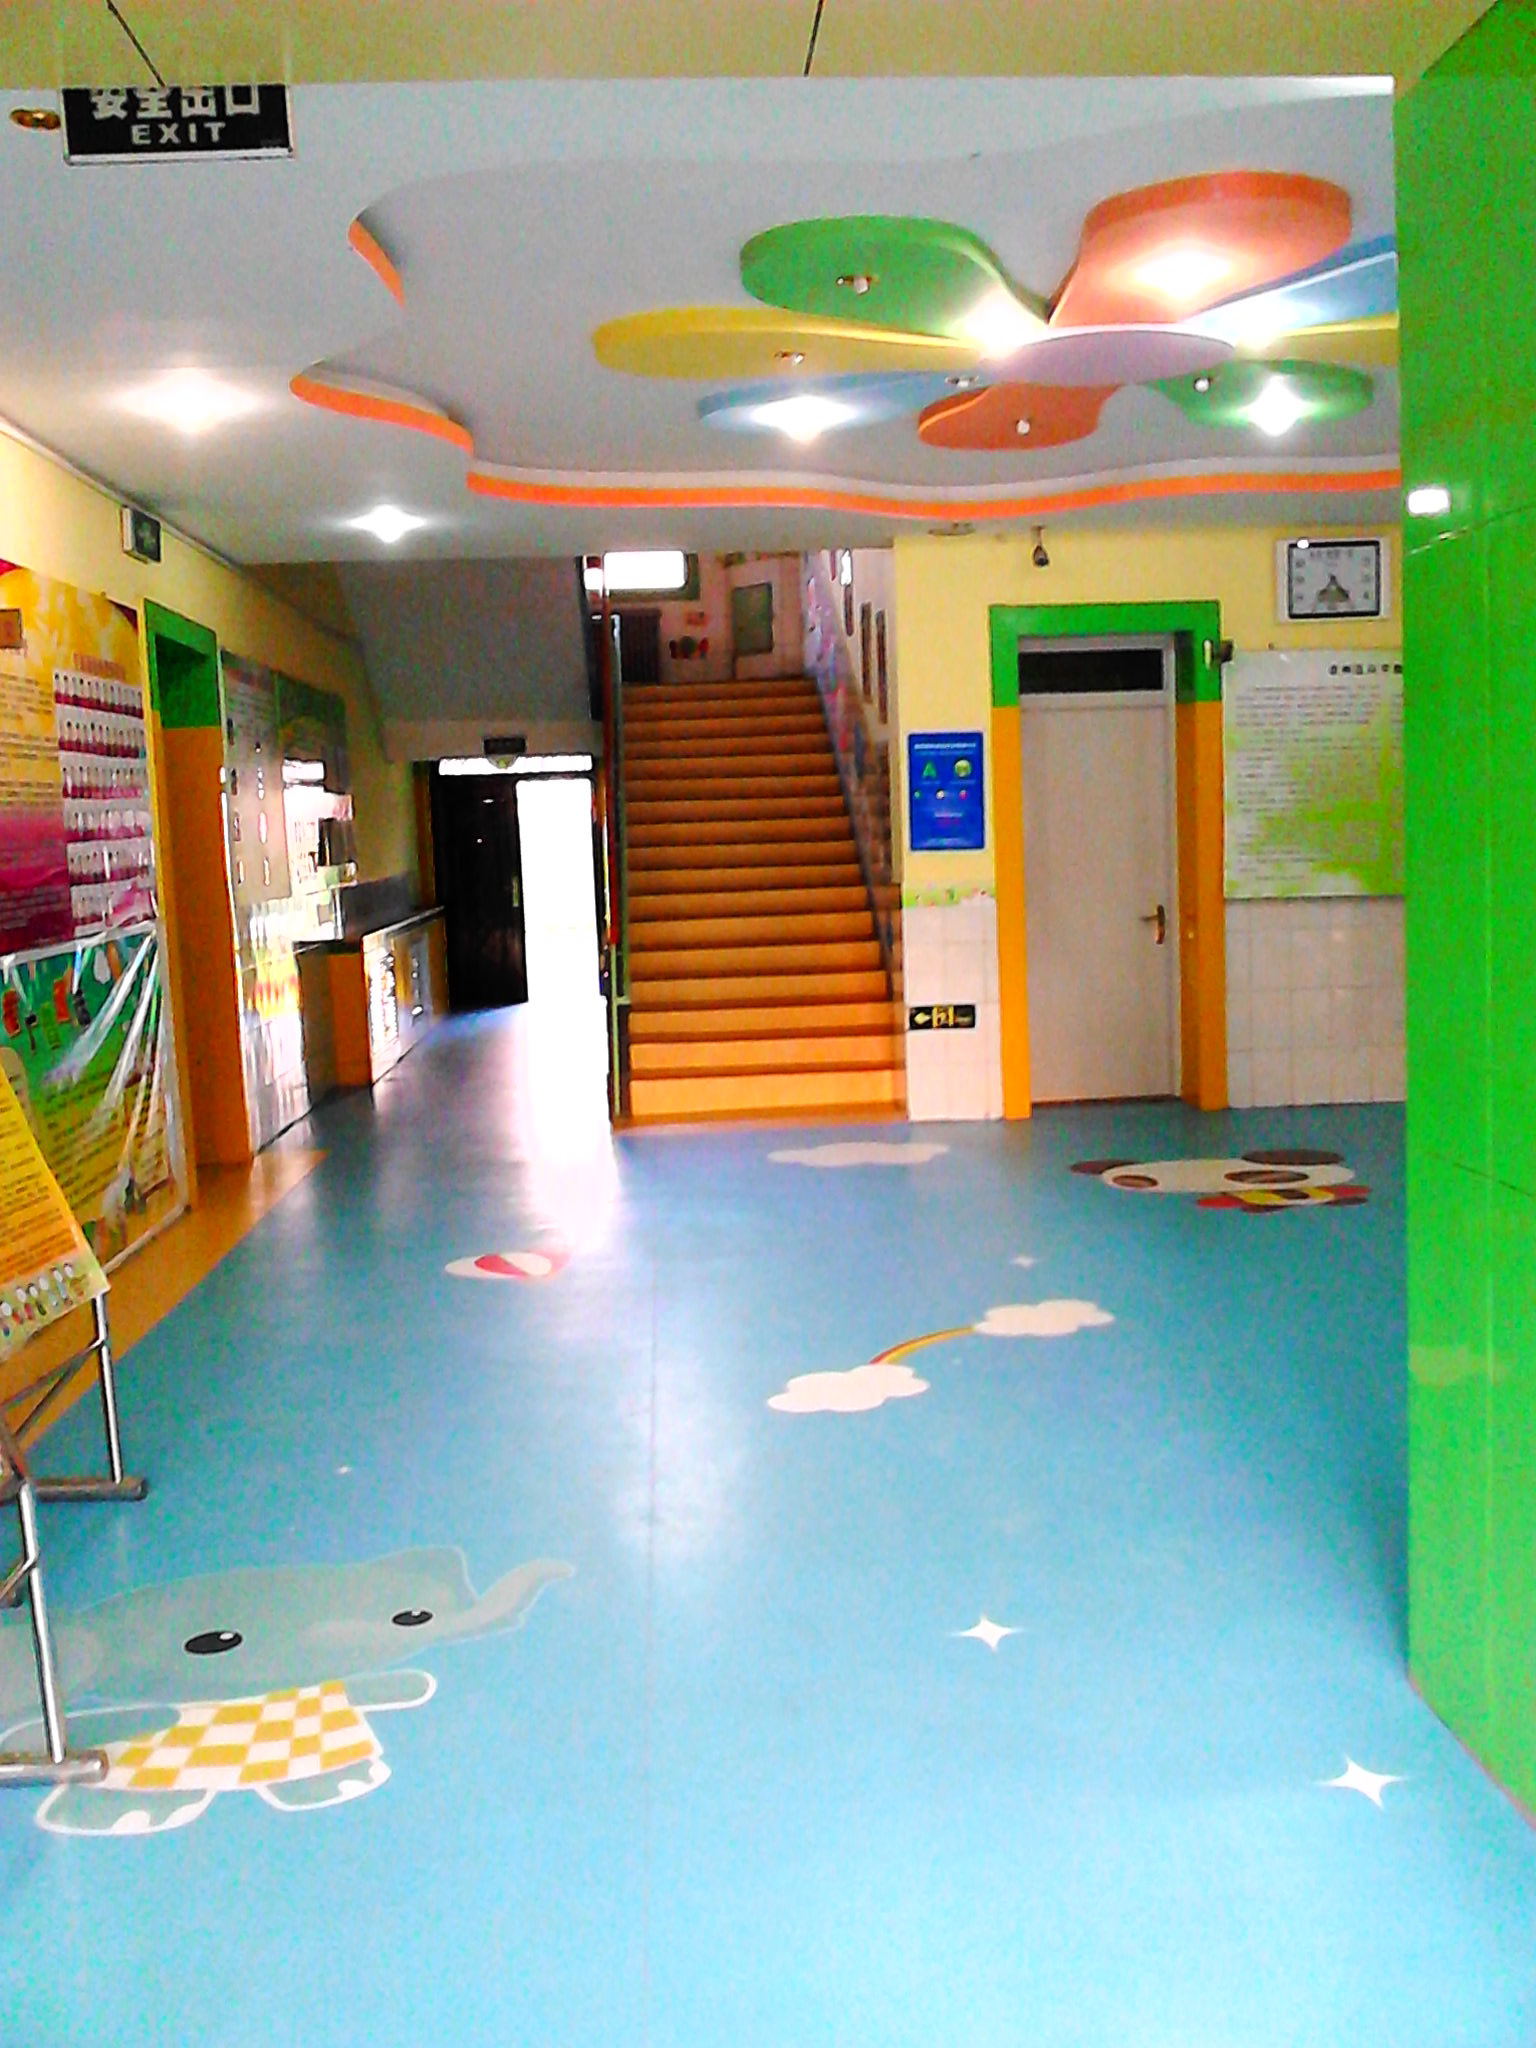 悬浮地板，幼儿园**地板，运动地板，PVC塑胶地板特价销售啦